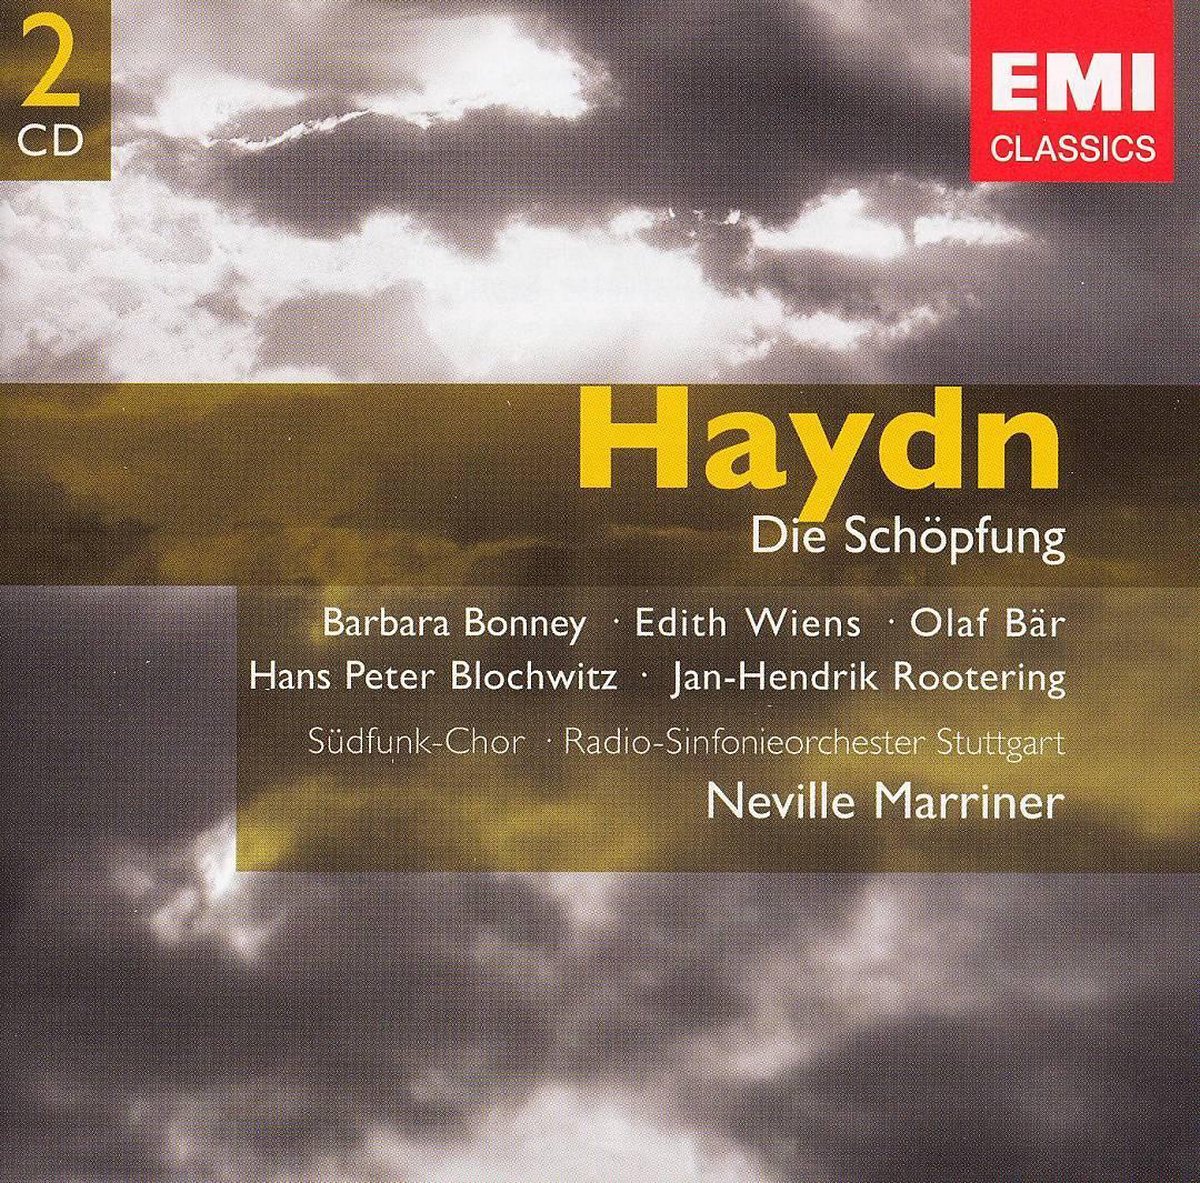 Haydn: Die Schöpfung - Neville Marriner